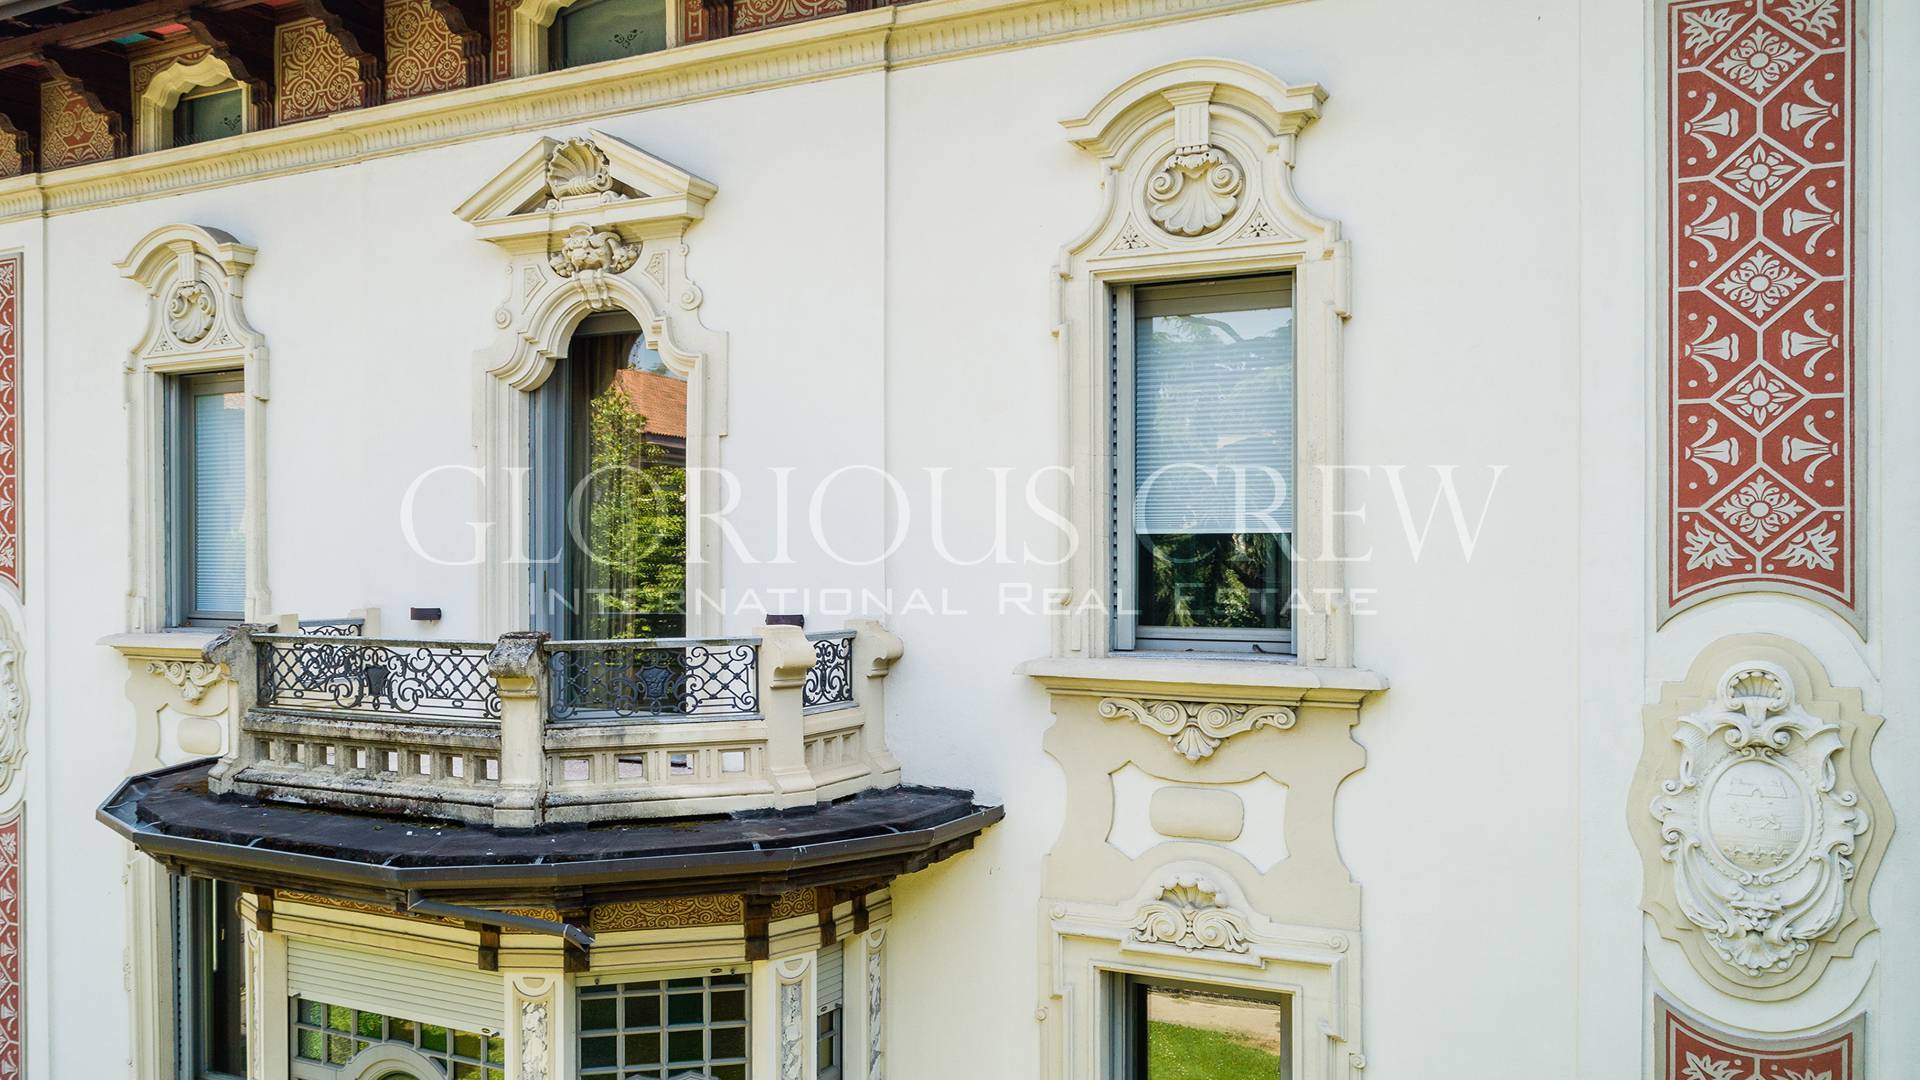 Villa in Vendita a Monza: 5 locali, 1300 mq - Foto 7